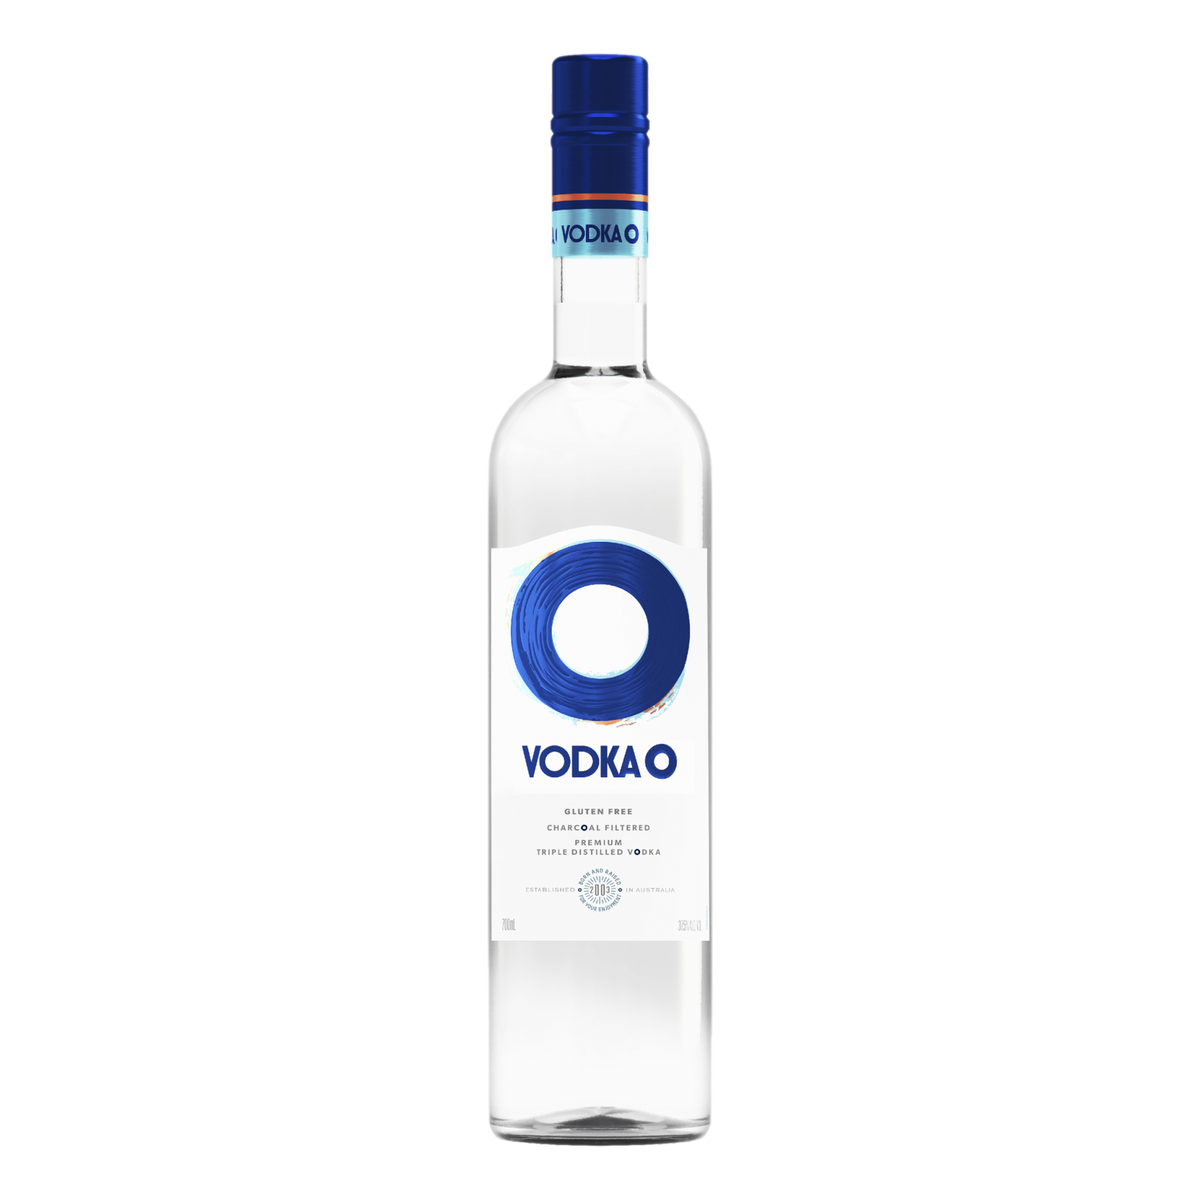 Vodka O Vodka 700ml